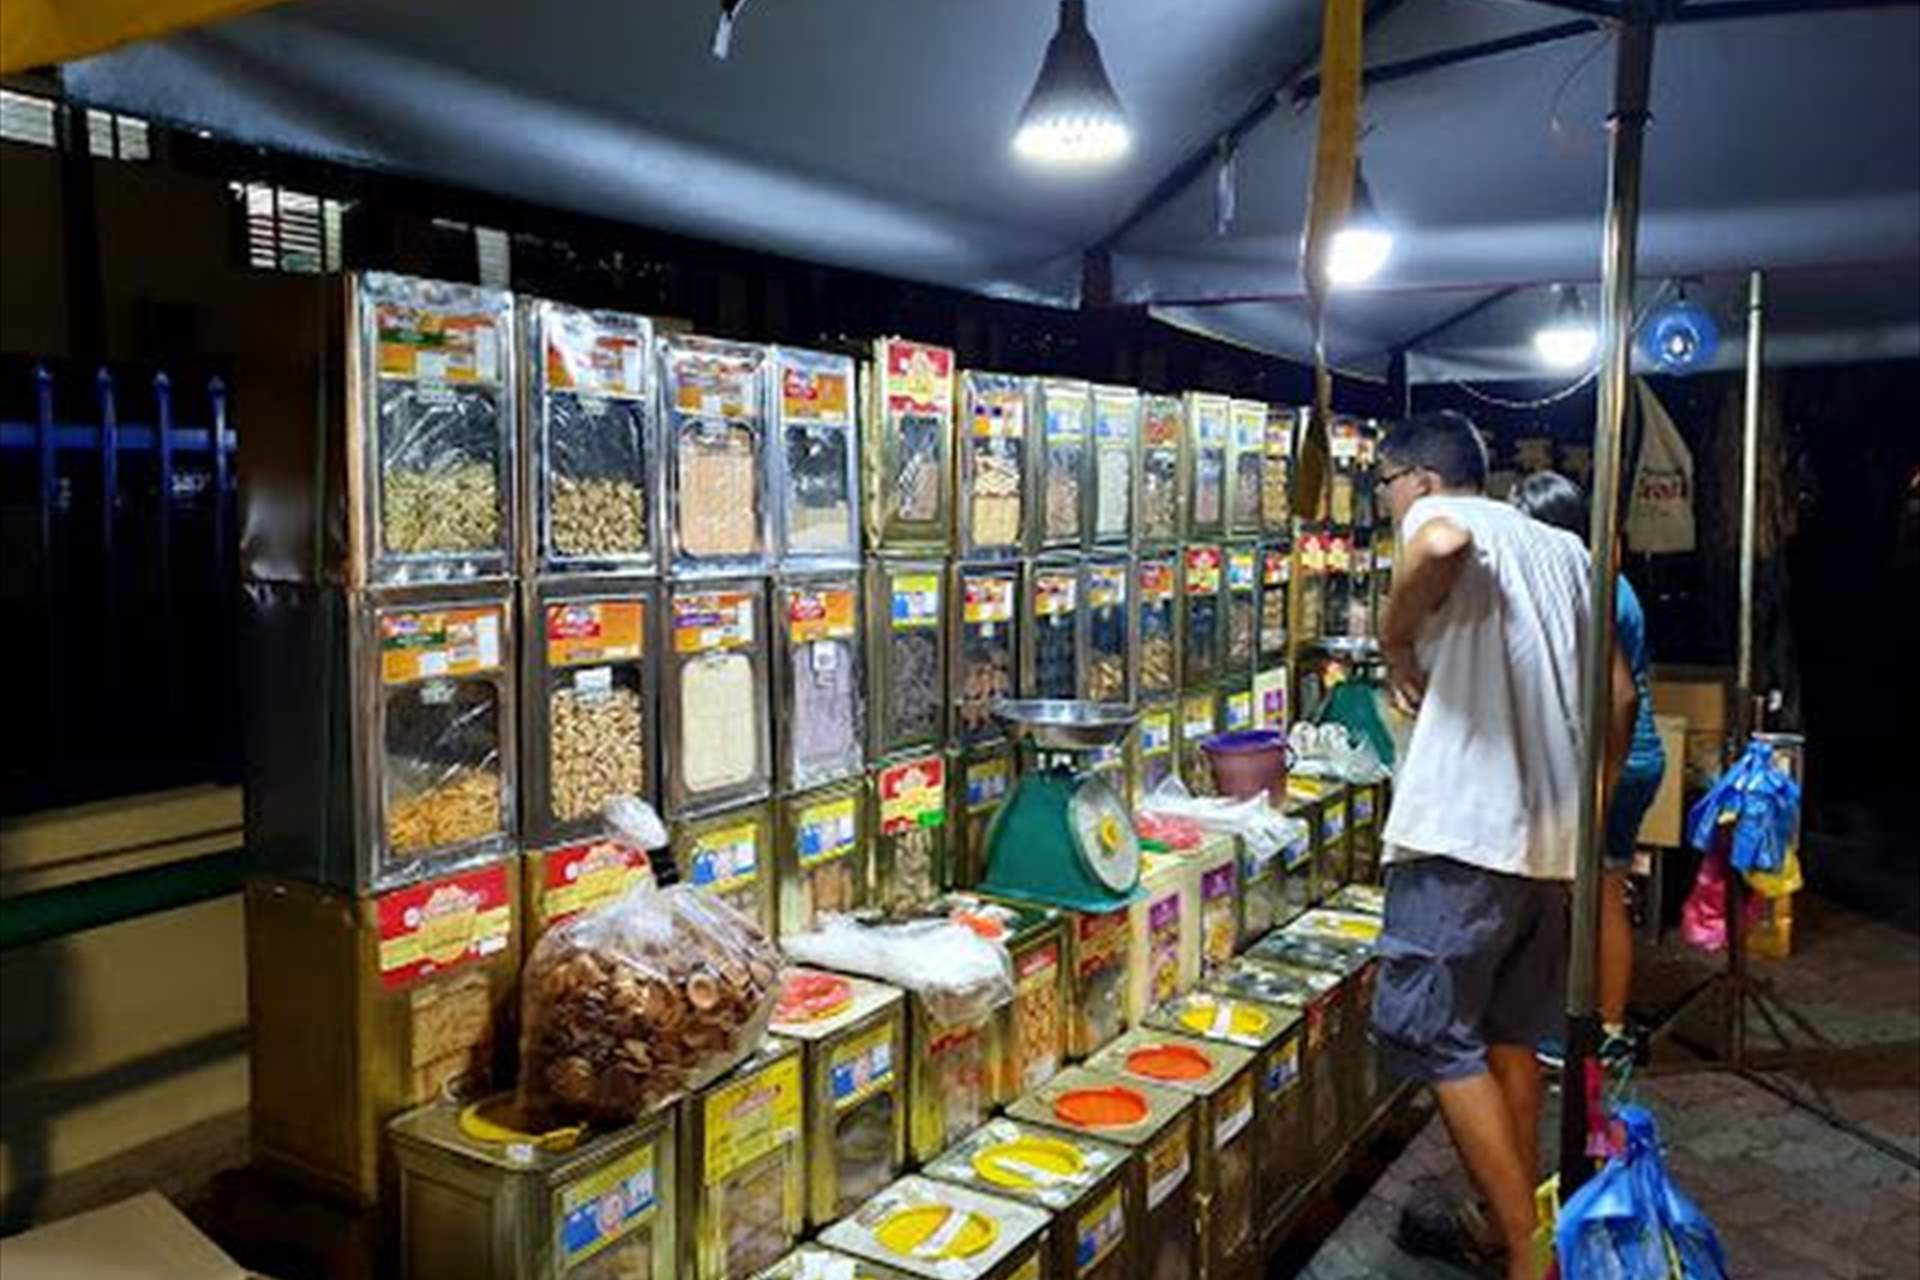 سوق شارع ماكالوم الليلي بينانج